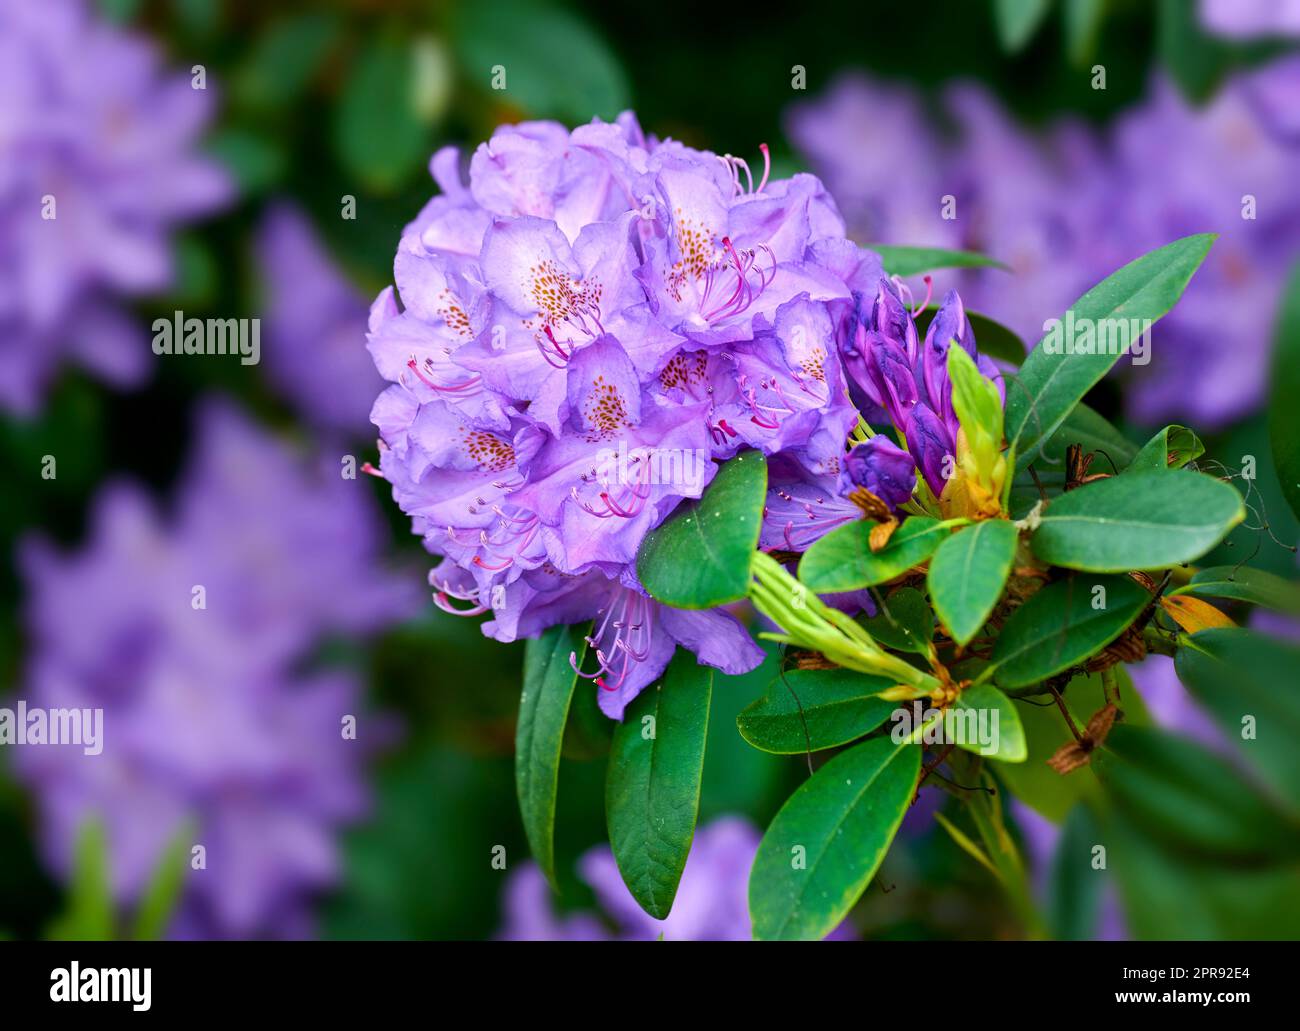 Nahaufnahme der wunderschönen Rhododendron Simsii Blume im Garten im frühen Frühling. Landschaftsansicht von Pflanzen, die in der Natur blühen. Natürliche weiße Blütenblätter, die aus langen und kurzen grünen Stämmen wachsen Stockfoto